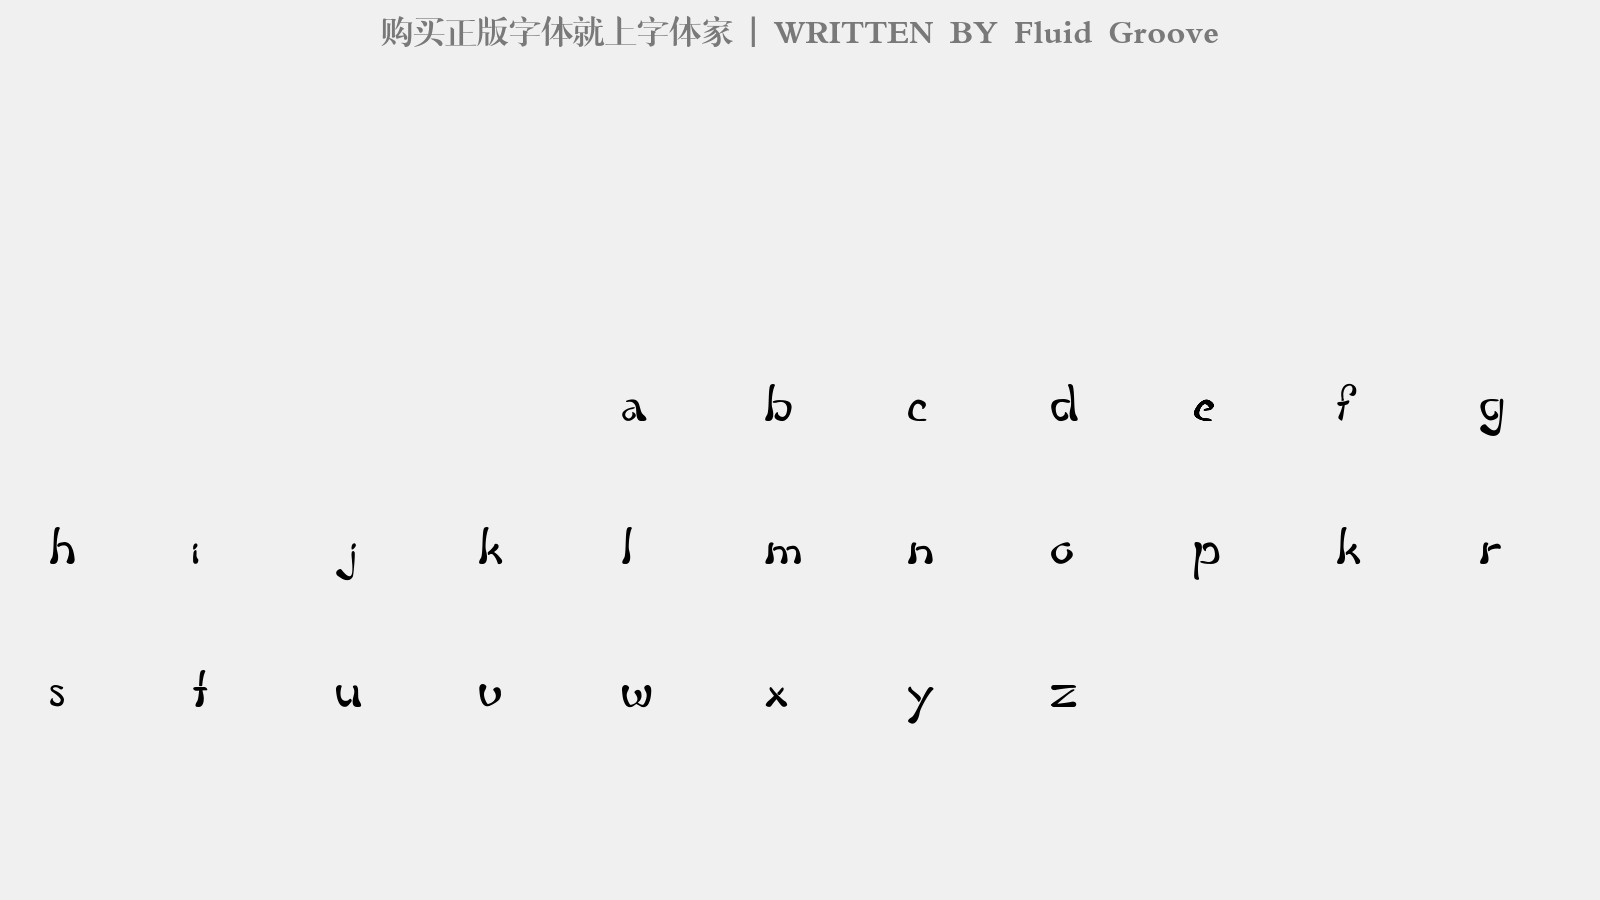 Fluid Groove - 大写字母/小写字母/数字